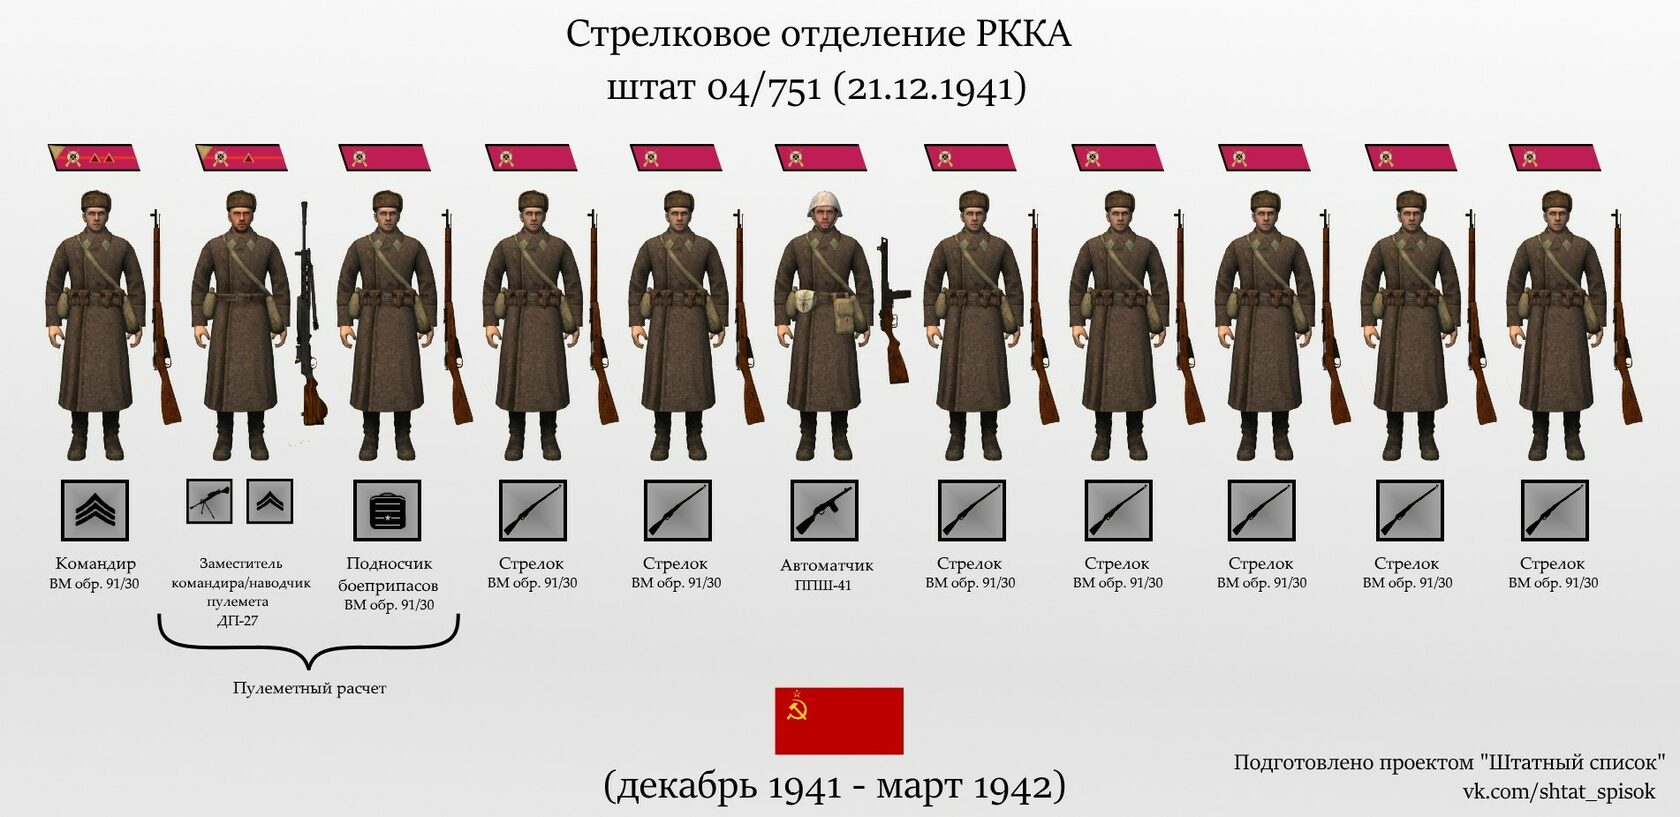 Штат стрелкового отделения РККА В 1941